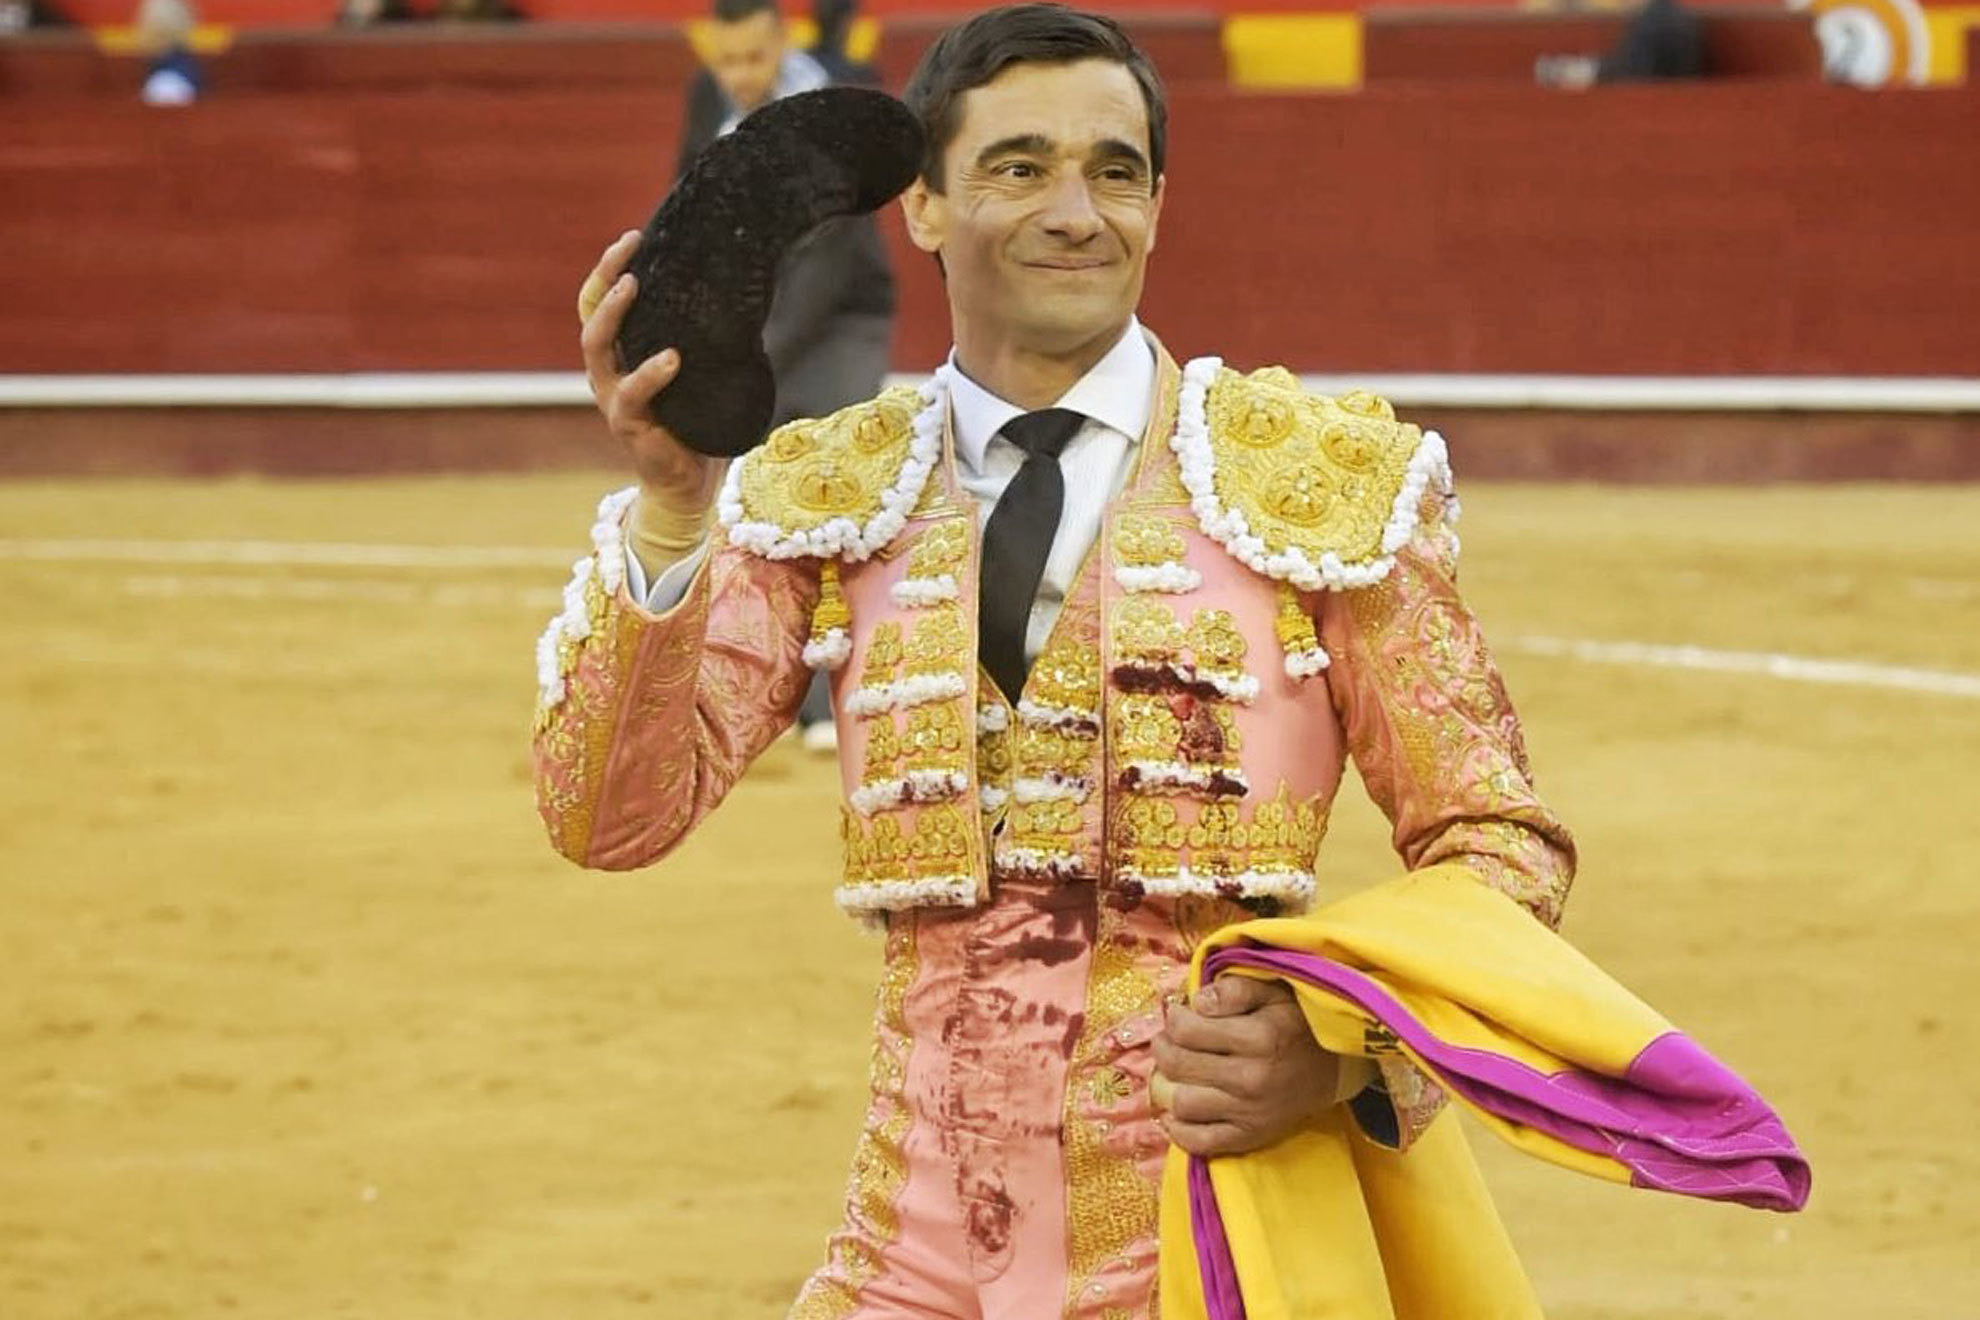 El toreo al natural de Paco Ureña vuelve a encender Valencia